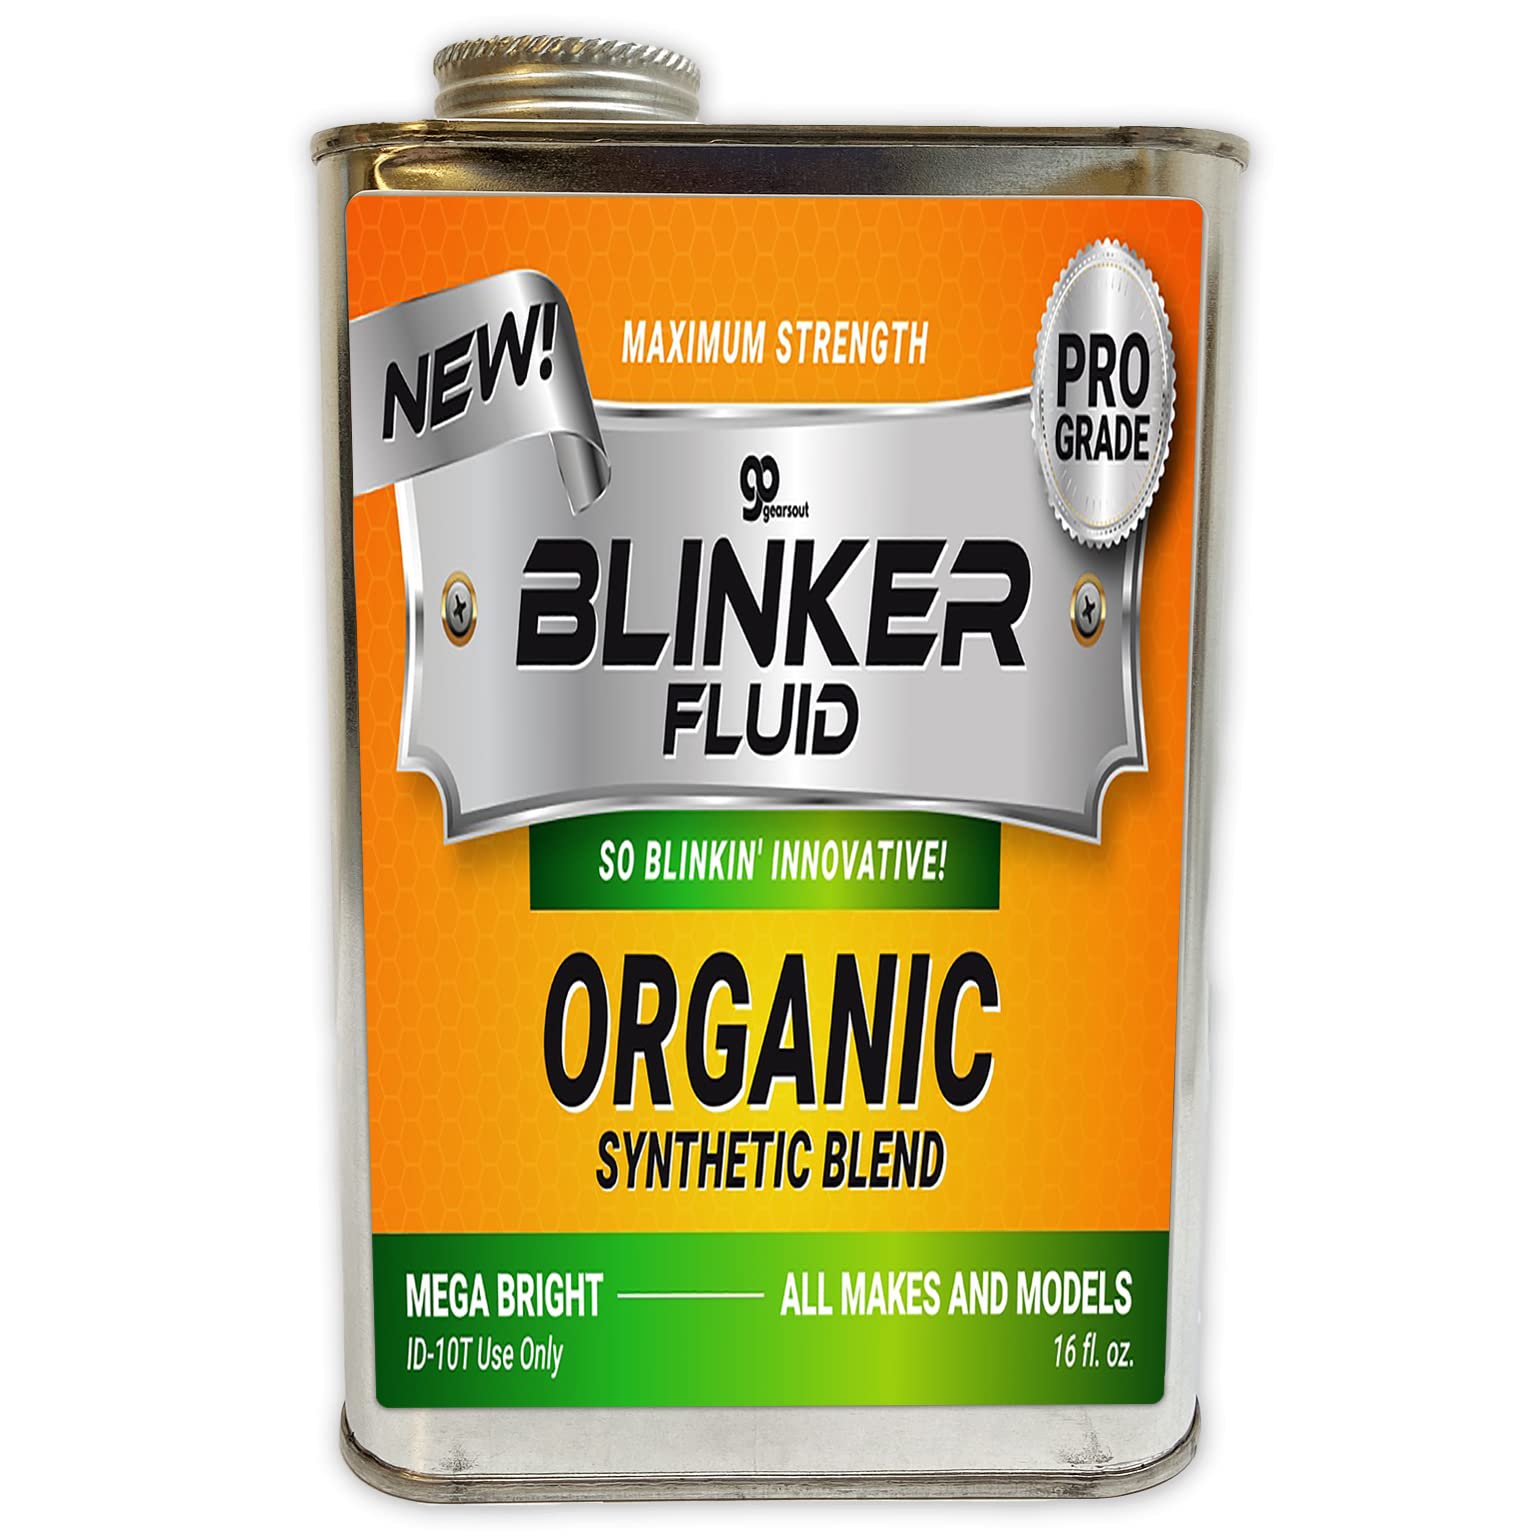 Blinker Fluid – Gears Out